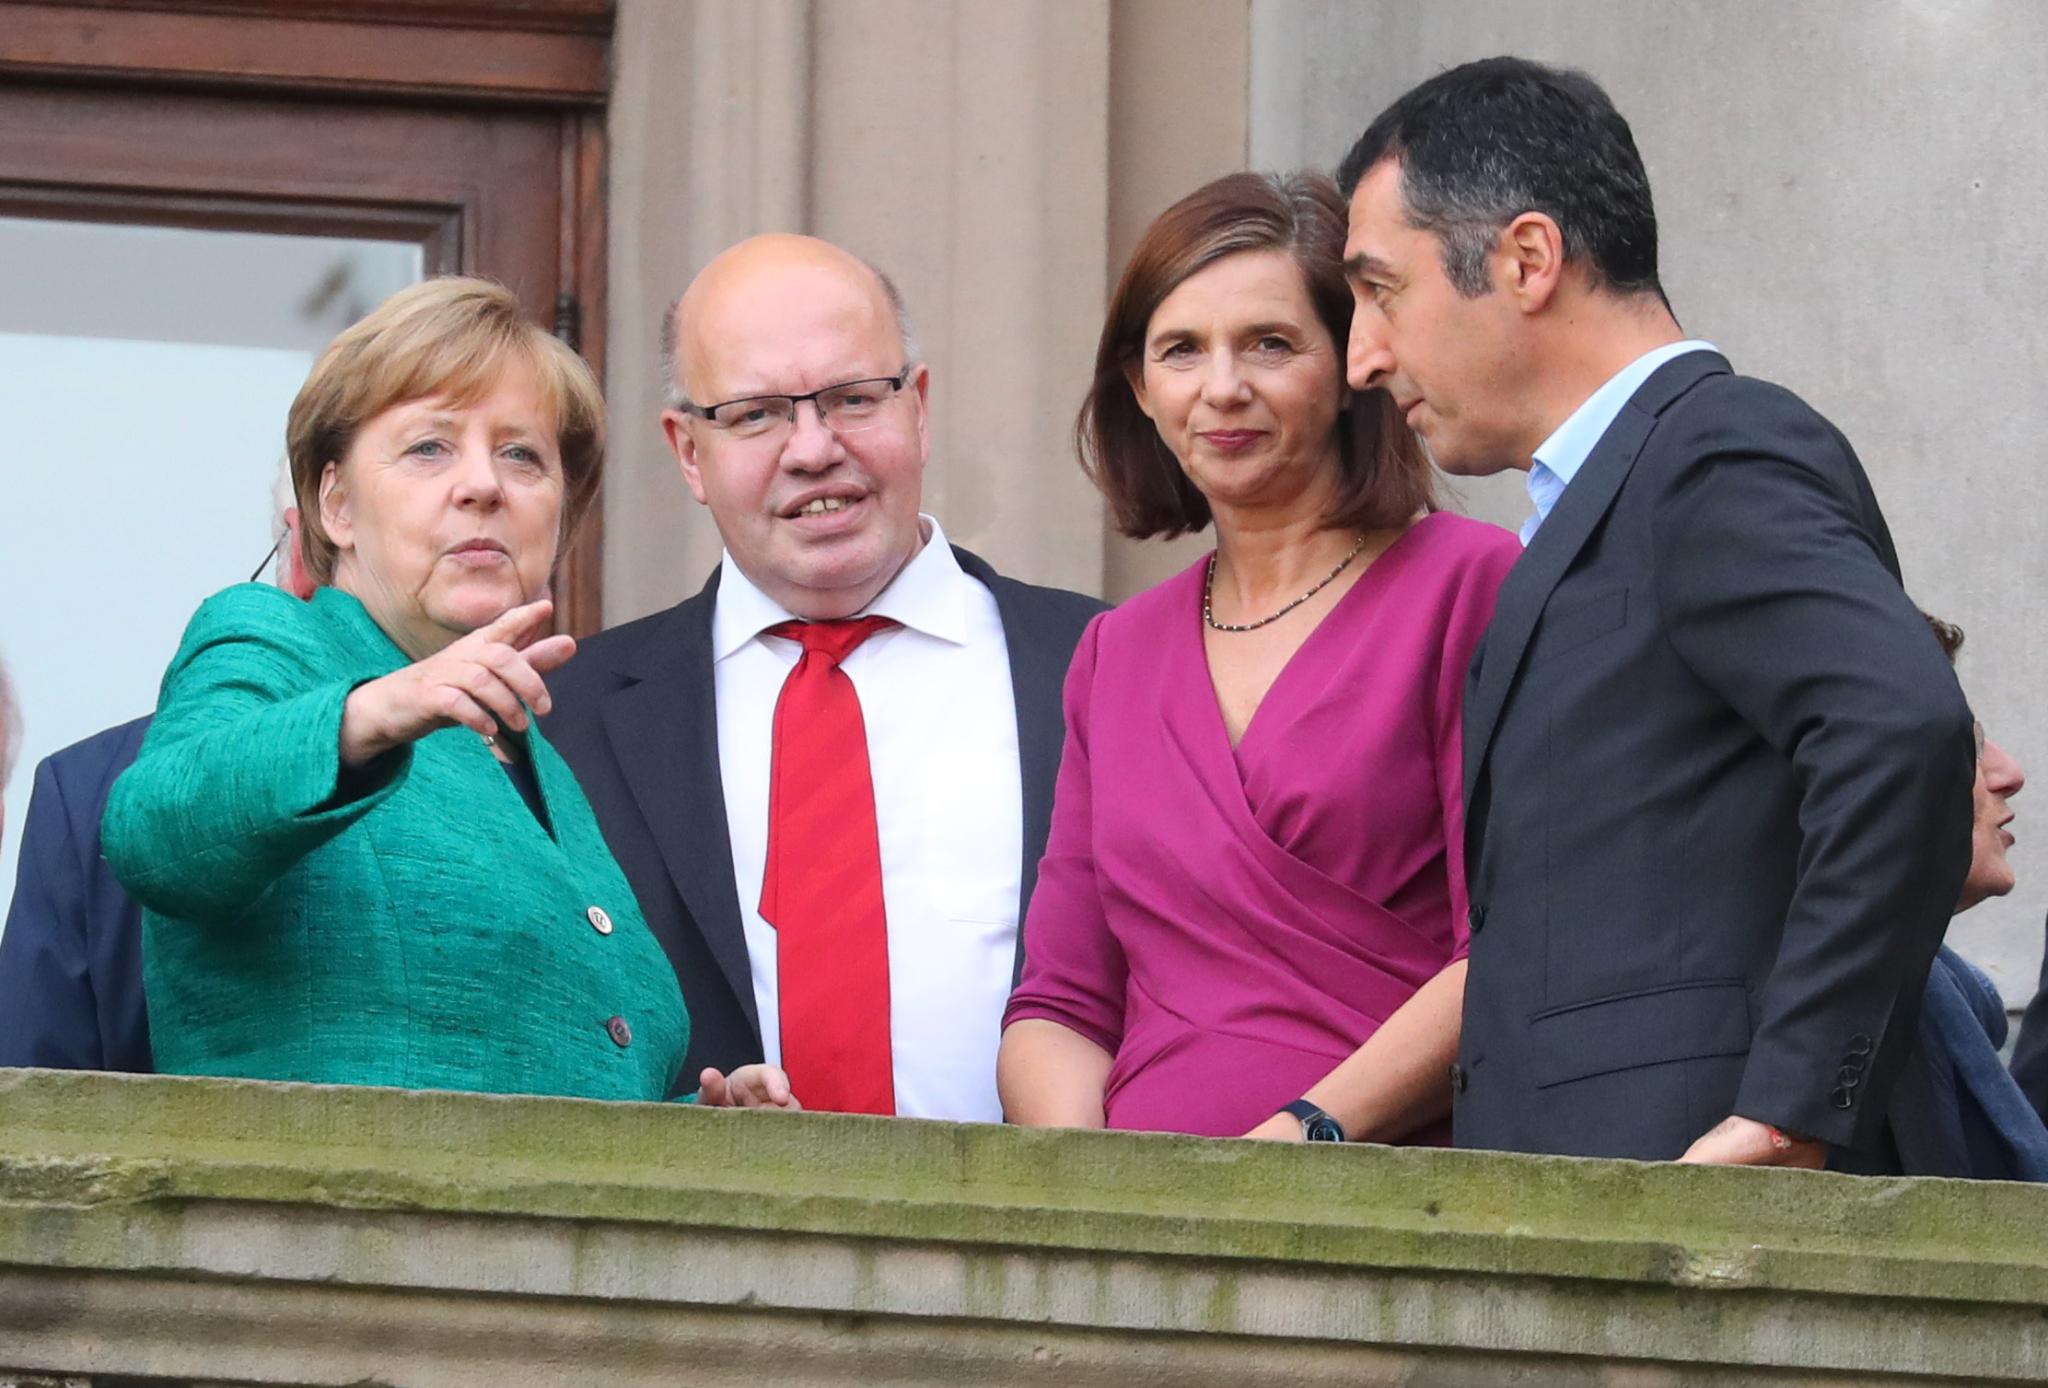 Grüne und FDP: Viel Lärm, aber am Ende steht Merkel